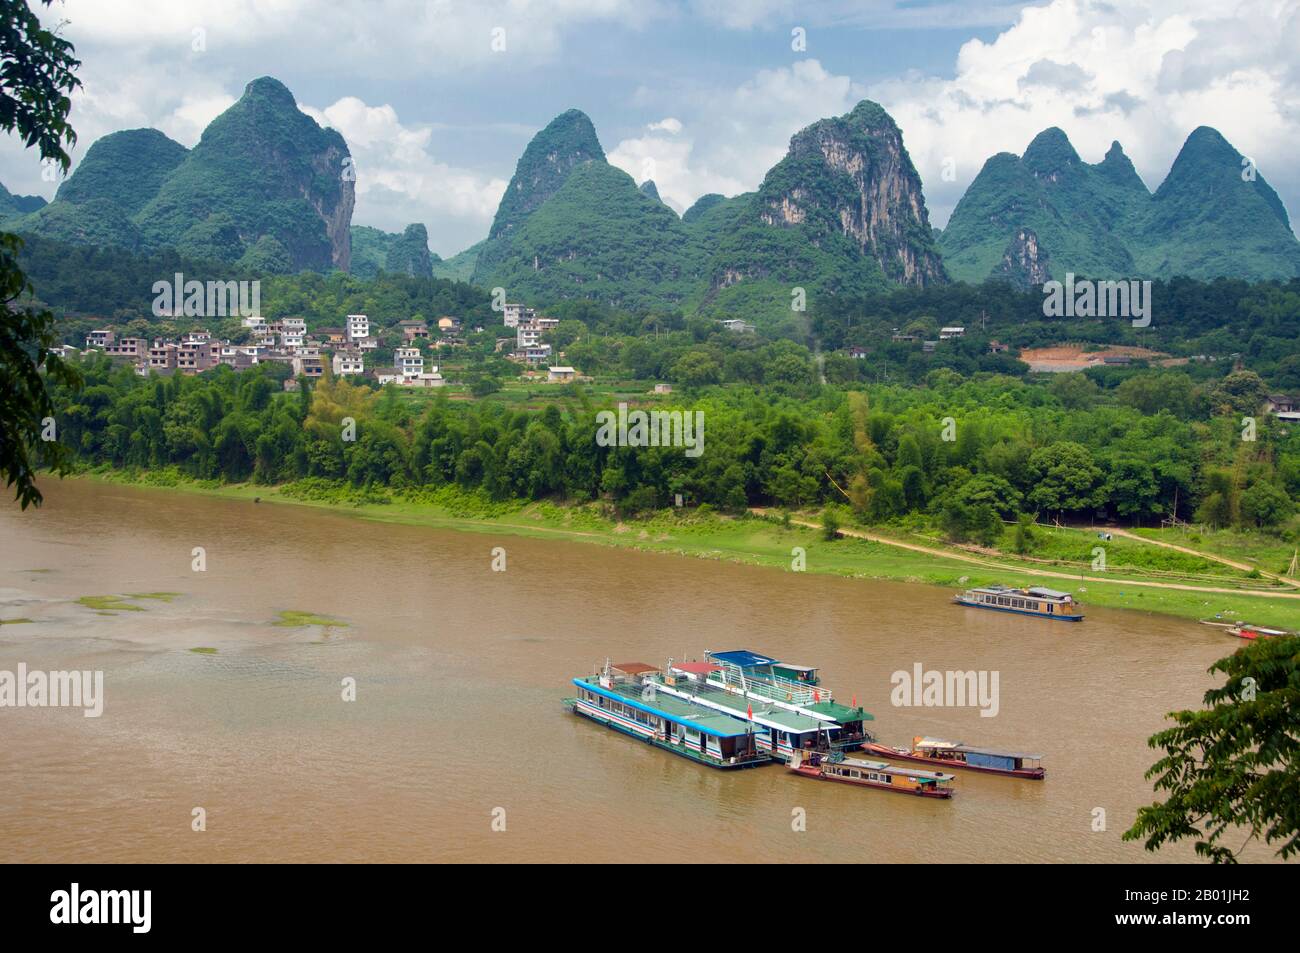 Cina: Barche sul fiume li a Yangshuo, vicino a Guilin, provincia del Guangxi. Yangshuo è giustamente famosa per i suoi paesaggi suggestivi. Si trova sulla riva occidentale del fiume li (Lijiang) ed è a soli 60 km a valle di Guilin. Negli ultimi anni è diventata una destinazione popolare tra i turisti pur mantenendo la sua atmosfera di piccola città fluviale. Guilin è la scena dei paesaggi più famosi della Cina, ispirando migliaia di dipinti nel corso di molti secoli. Le "montagne e fiumi più belli sotto il cielo" sono così stimolanti che poeti, artisti e turisti hanno reso questa attrazione naturale numero uno della Cina. Foto Stock